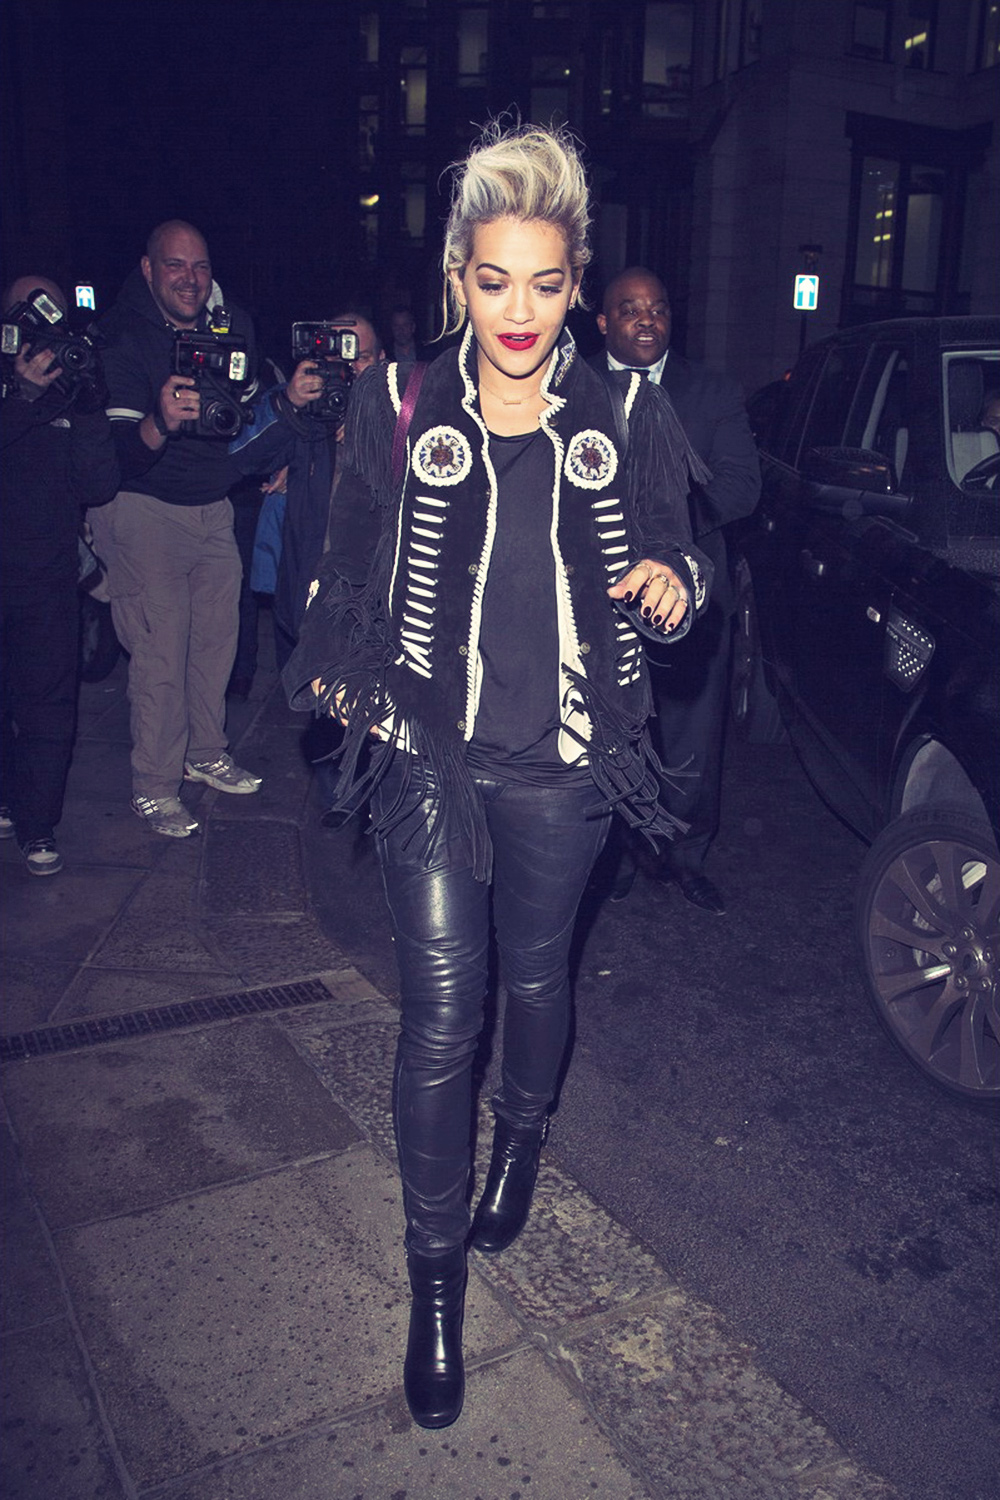 Rita Ora arrives at The Dorchester Hotel